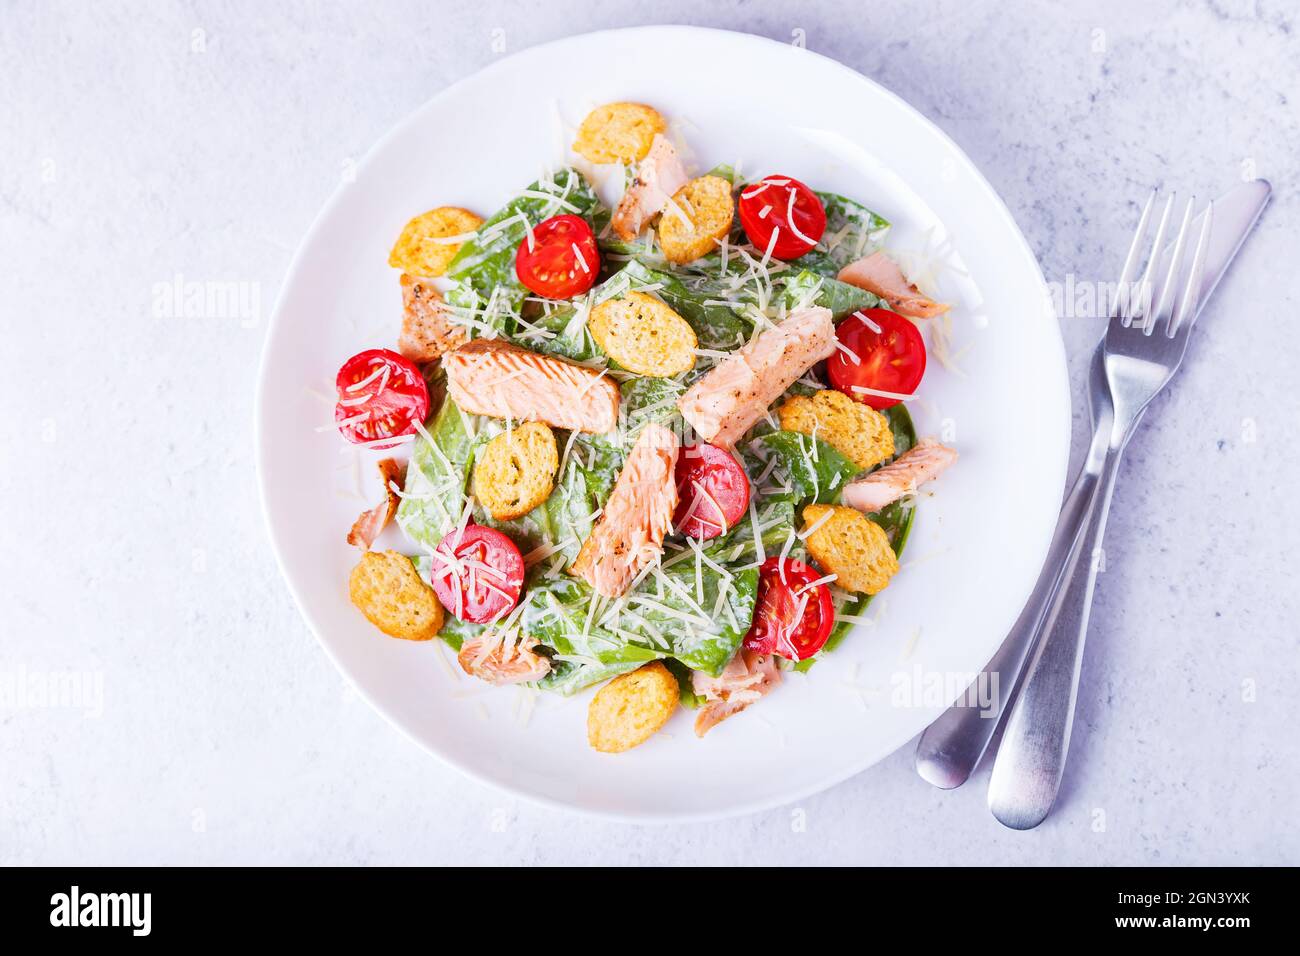 Caesar-Salat mit rotem Fisch (Lachs, Forelle), Kirschtomaten, Croutons, Parmesan-Käse und Romaine. Traditionelles amerikanisches Gericht. Nahaufnahme, selektiver FOC Stockfoto